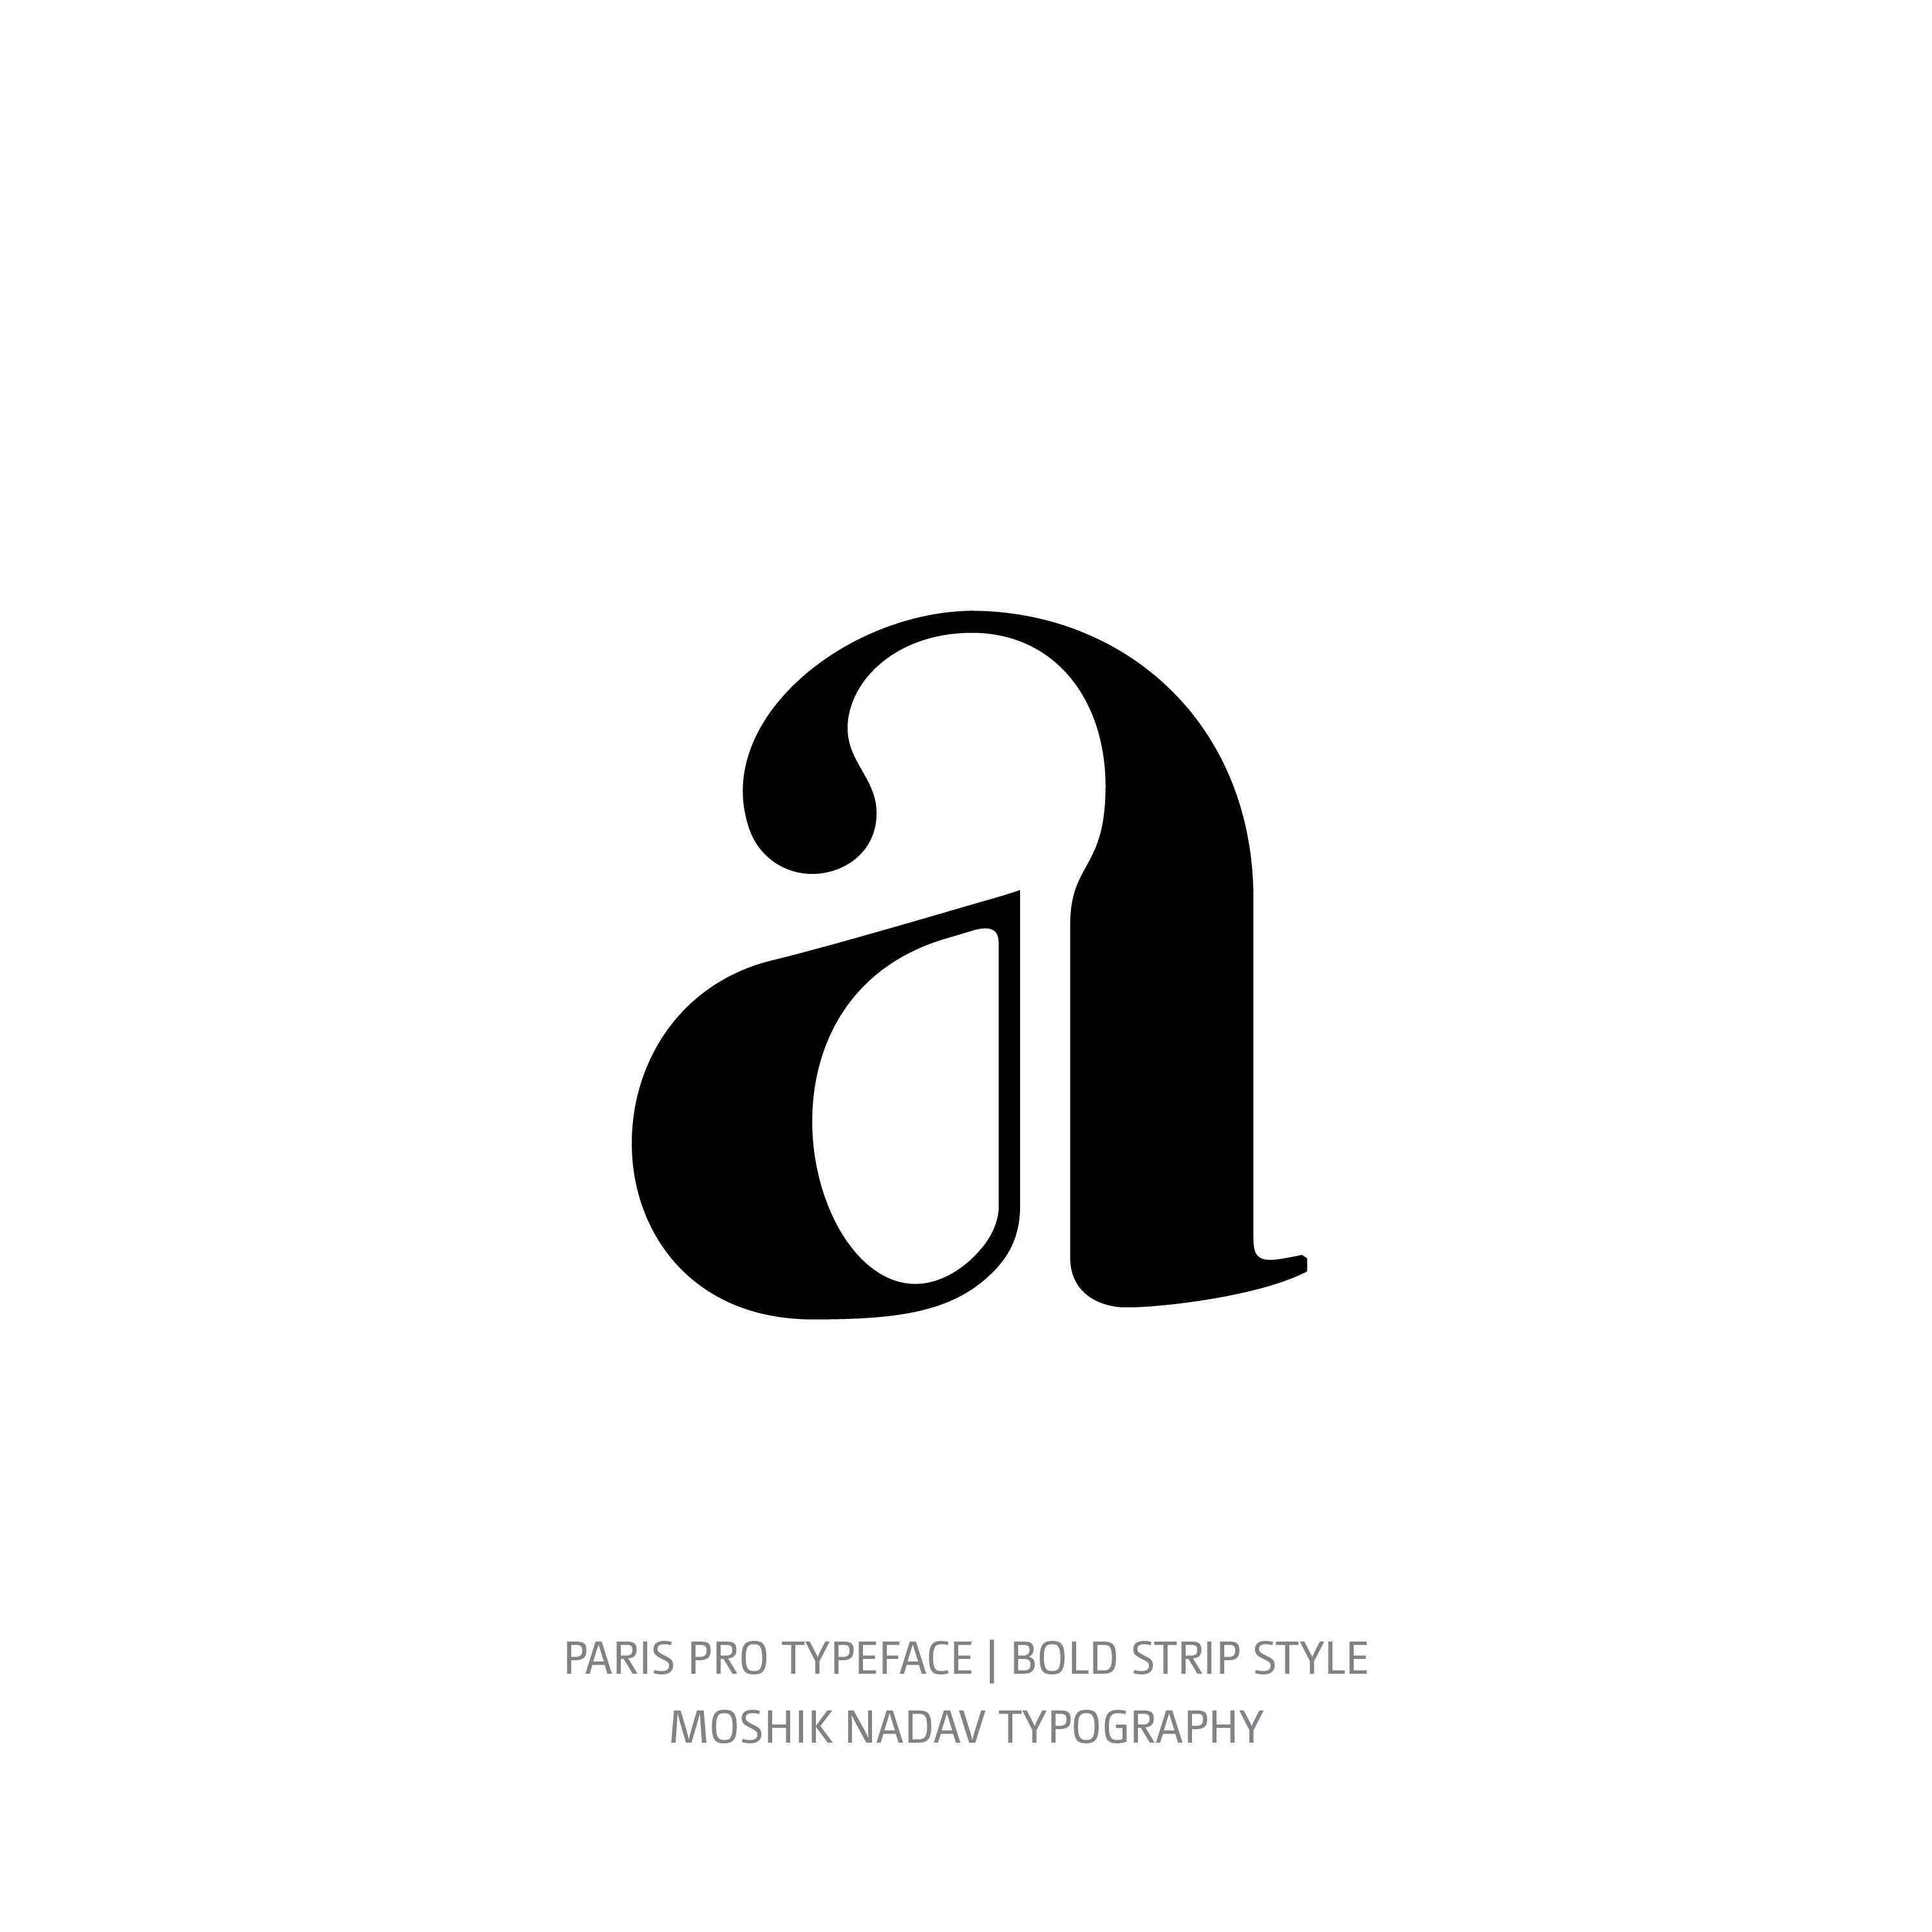 Paris Pro Typeface Bold Strip a